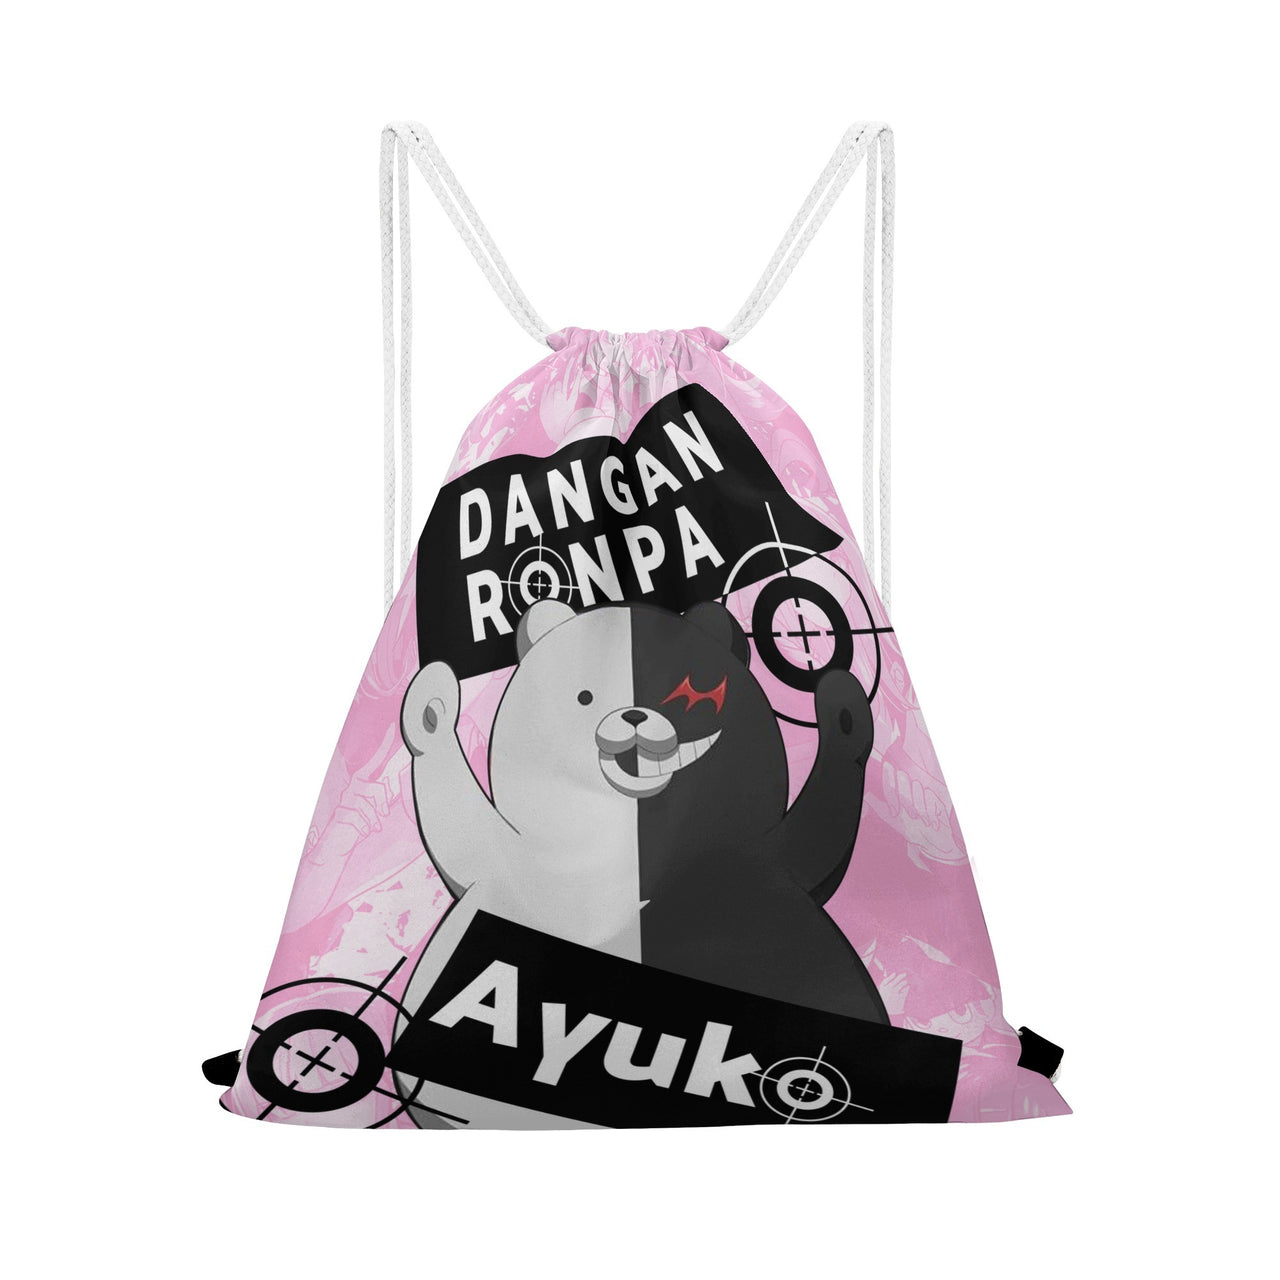 Danganronpa  Anime Drawstring Bag